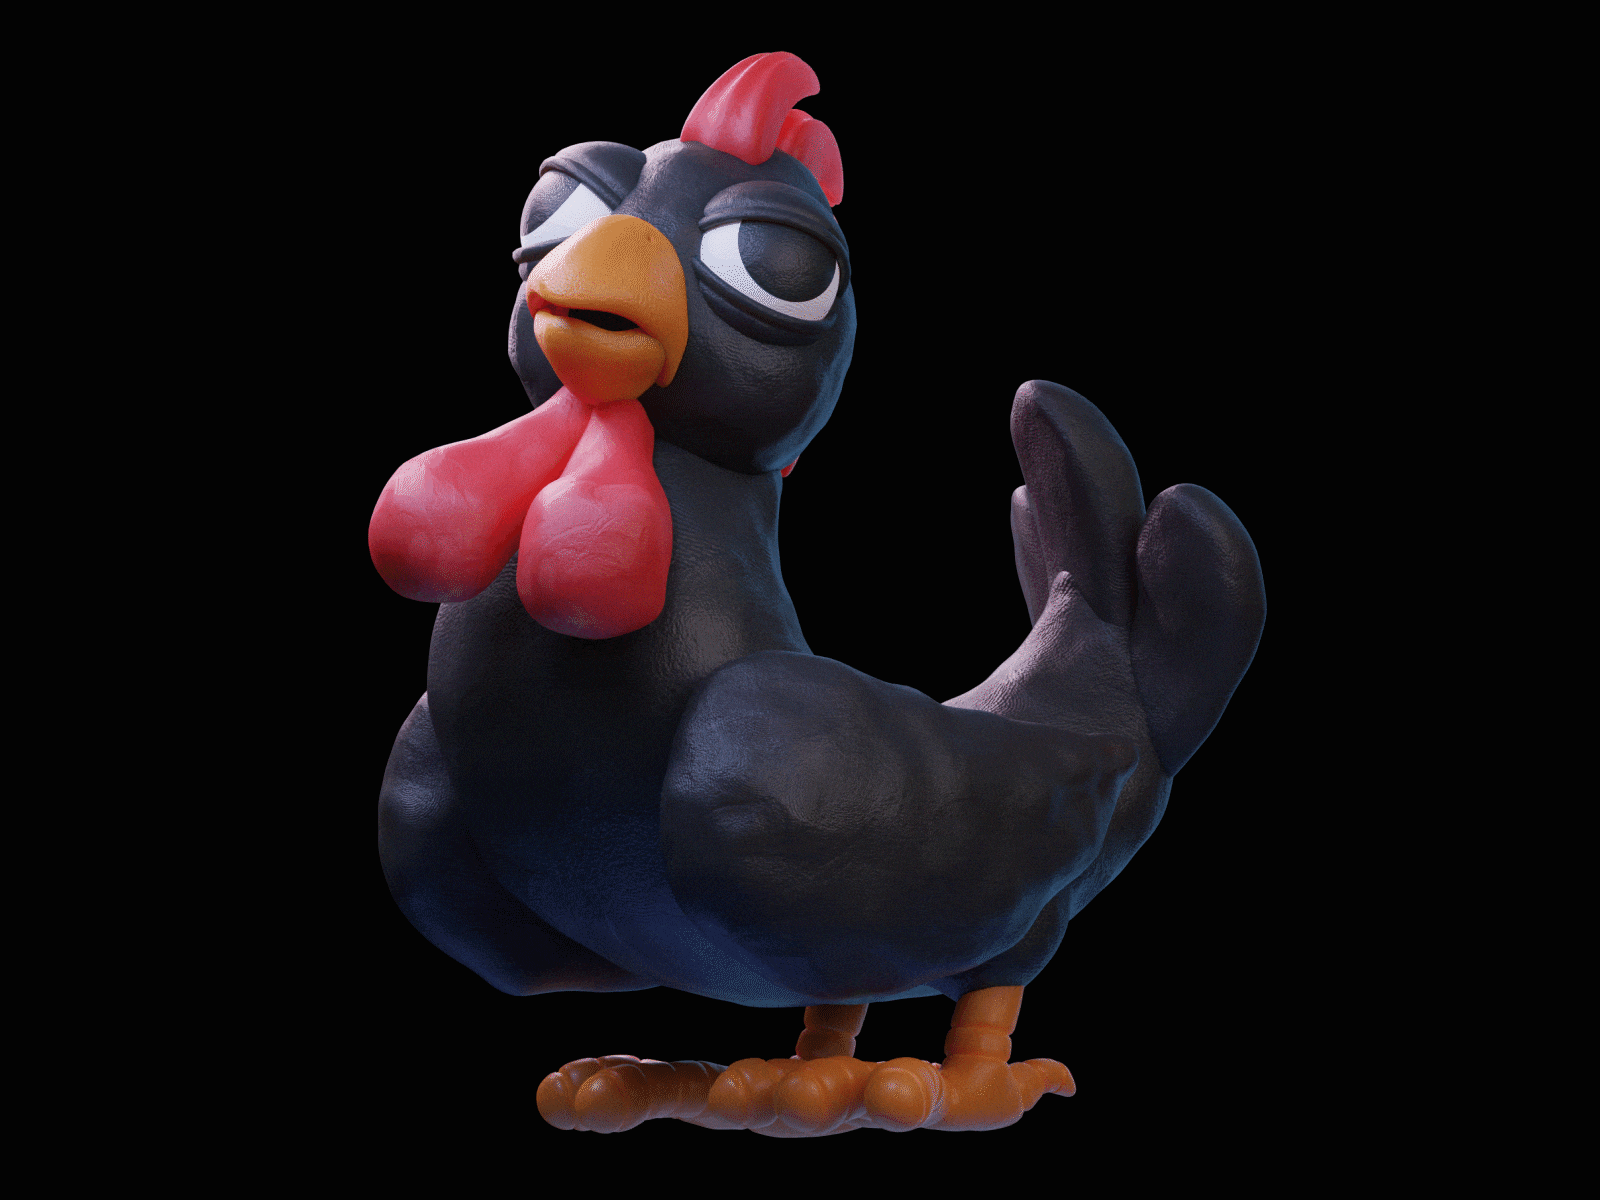 Big Black Cock in 3D (rooster) 3d 3dart 3ddesign 3dillustration 3dmodeling animation blender character clay illustration model plasticine render rooster